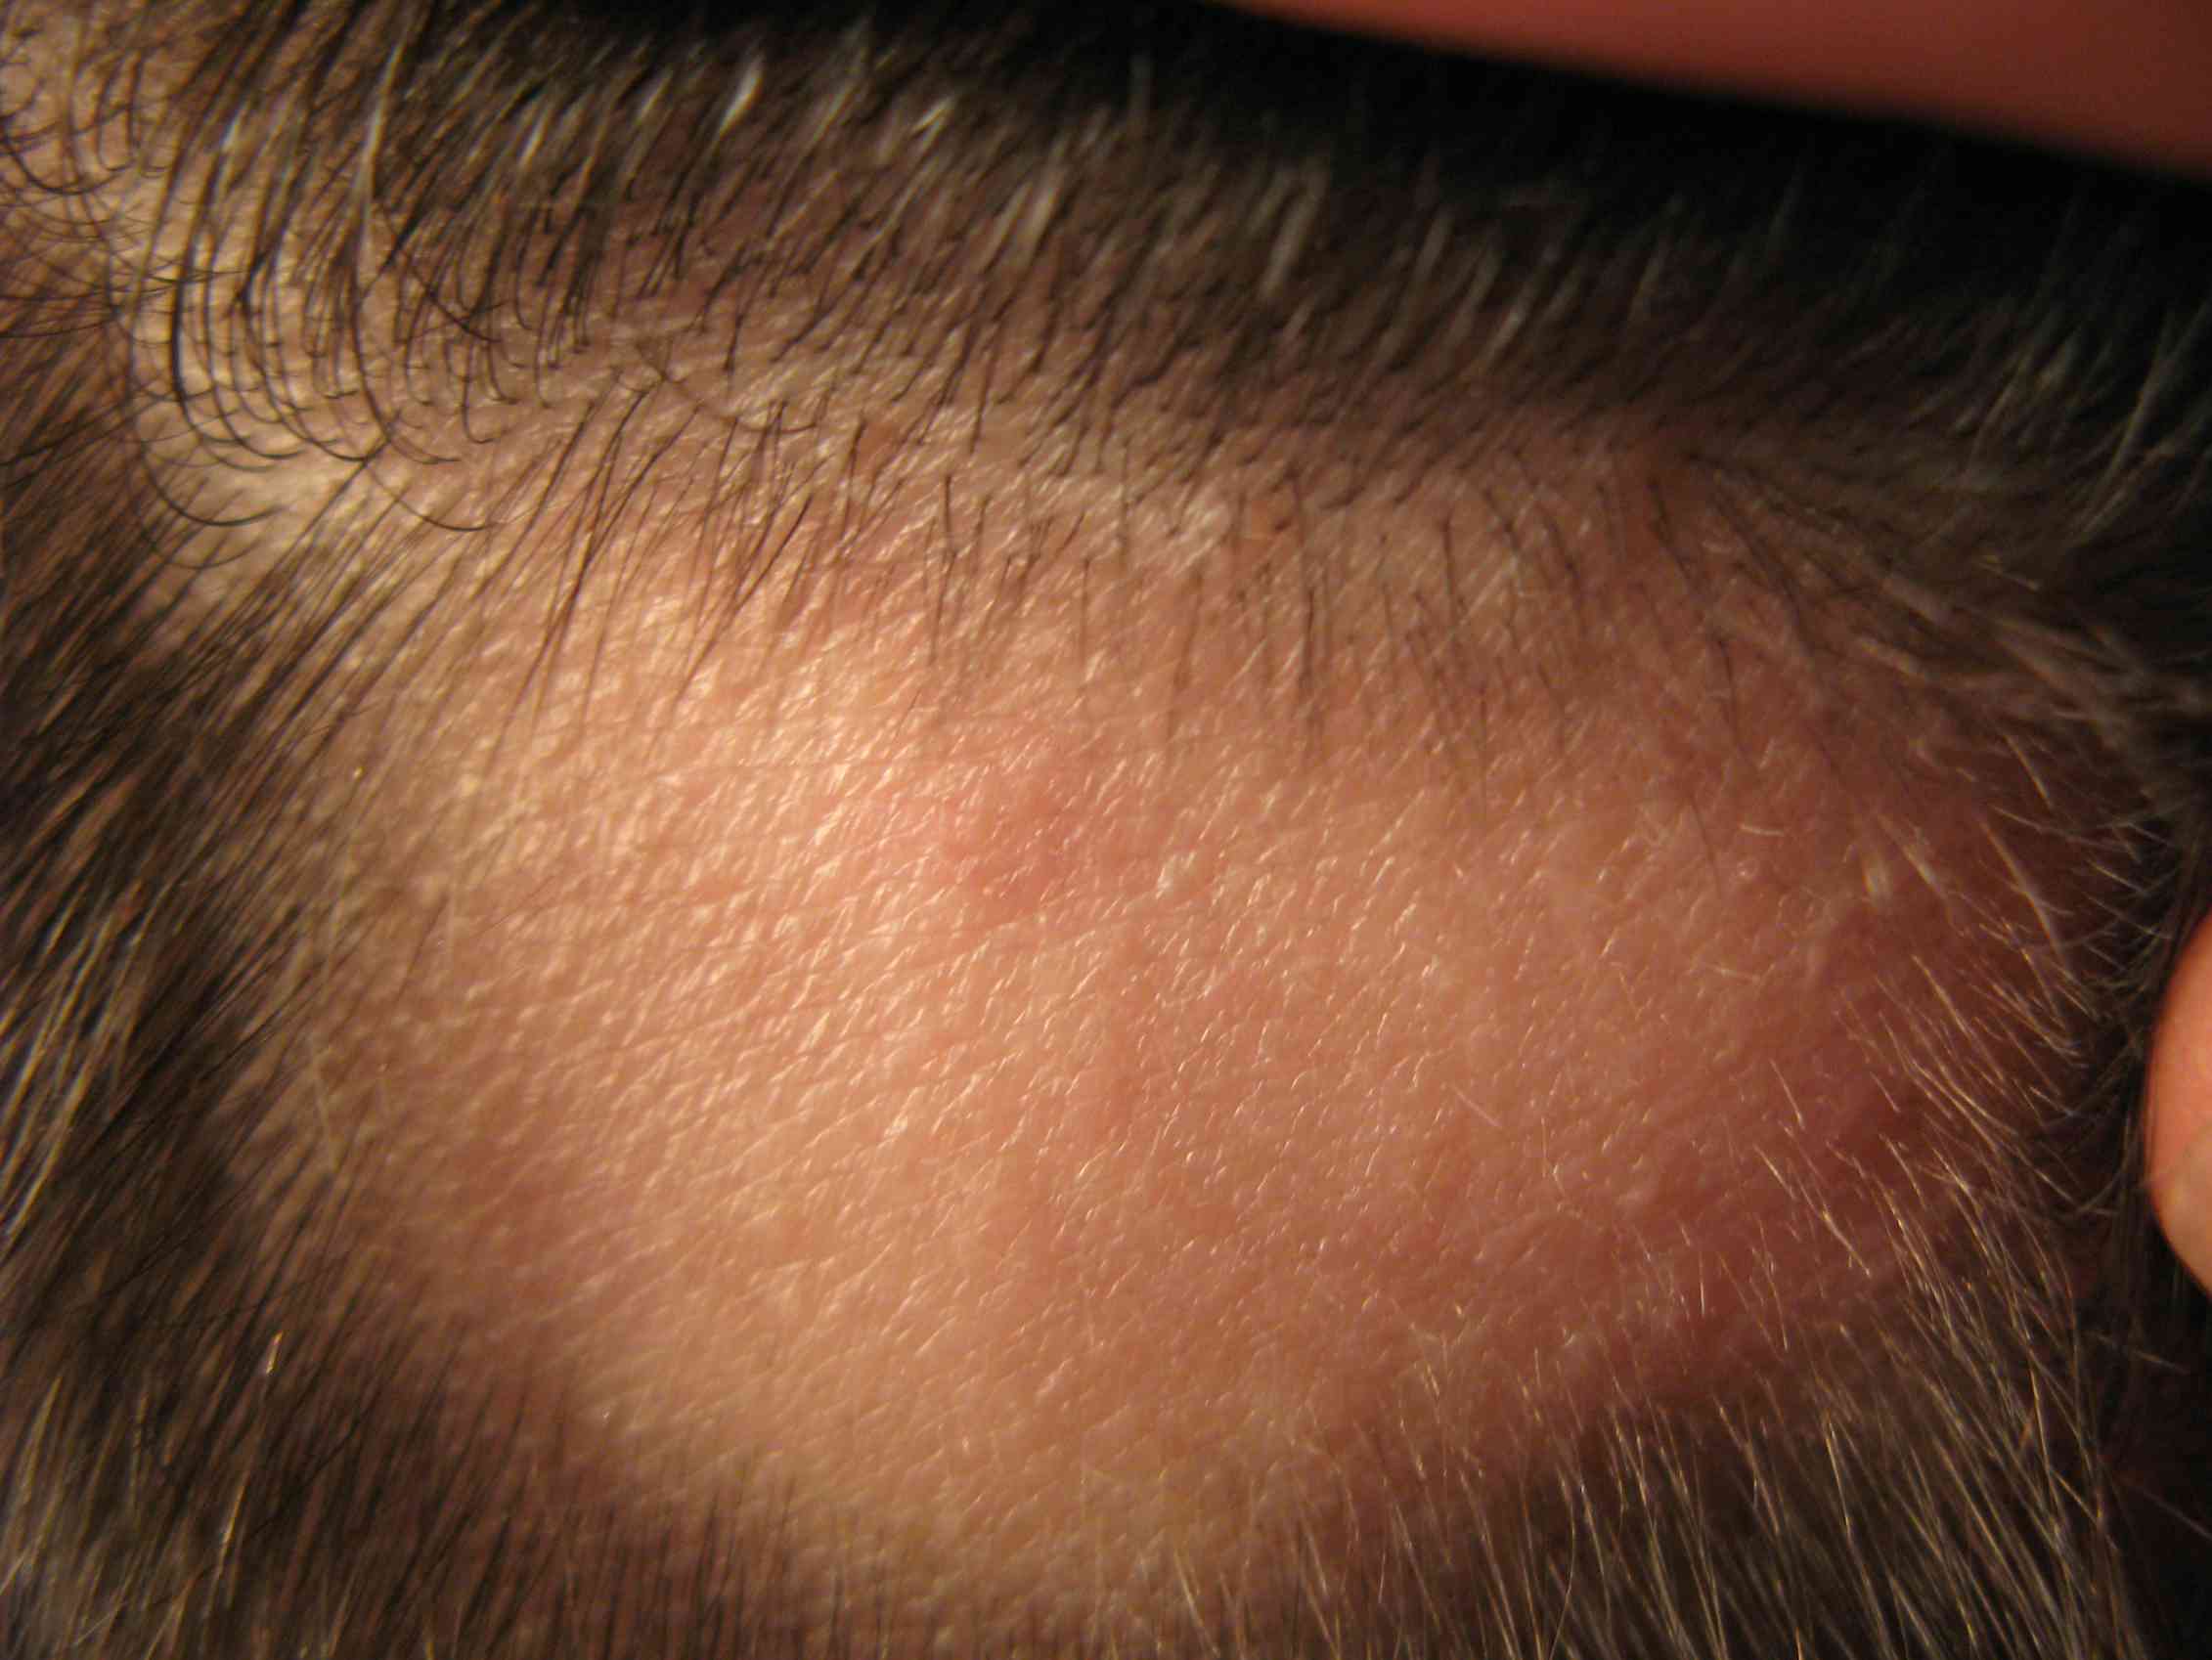 Красная точка на лбу у мужчины. Фолликулит, гипертрихоз. Очаговая алопеция (alopecia Areata). Трихофития (стригущий лишай).